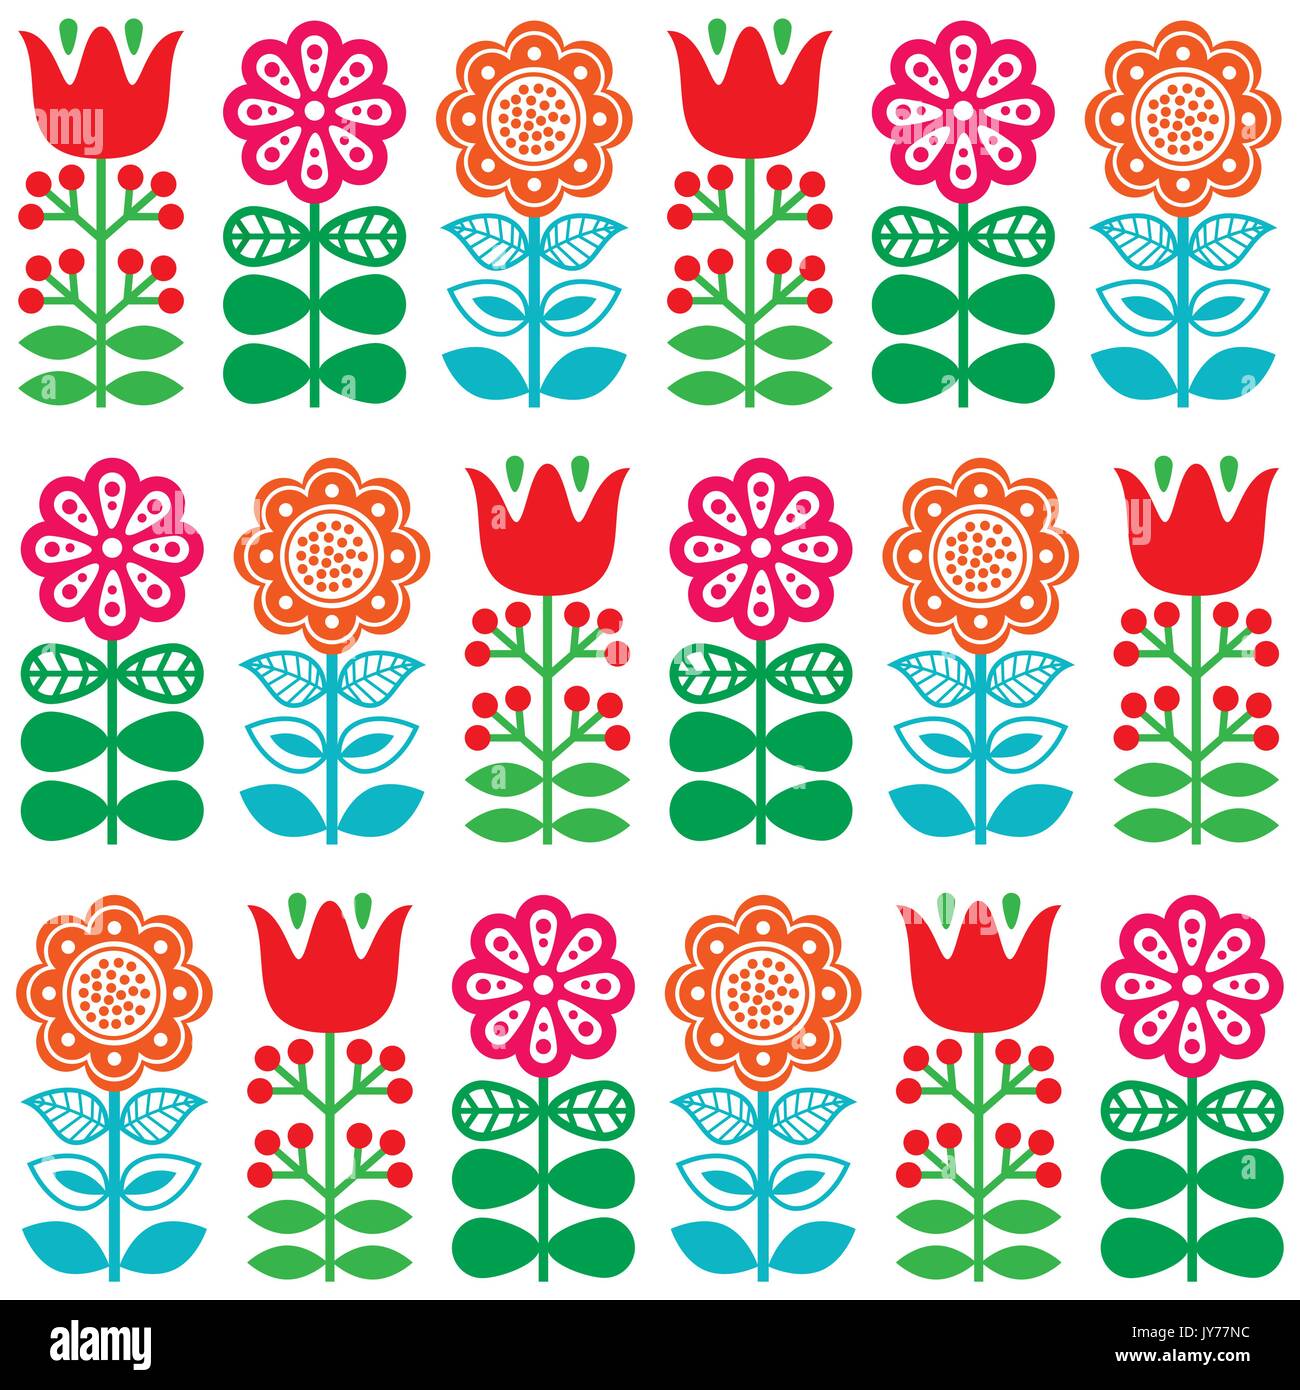 Finnische inspiriert nahtlose Volkskunst Muster - Skandinavisch, nordischen Stil Vektor floral sich wiederholende Muster mit Blumen auf weißem Hintergrund Stock Vektor